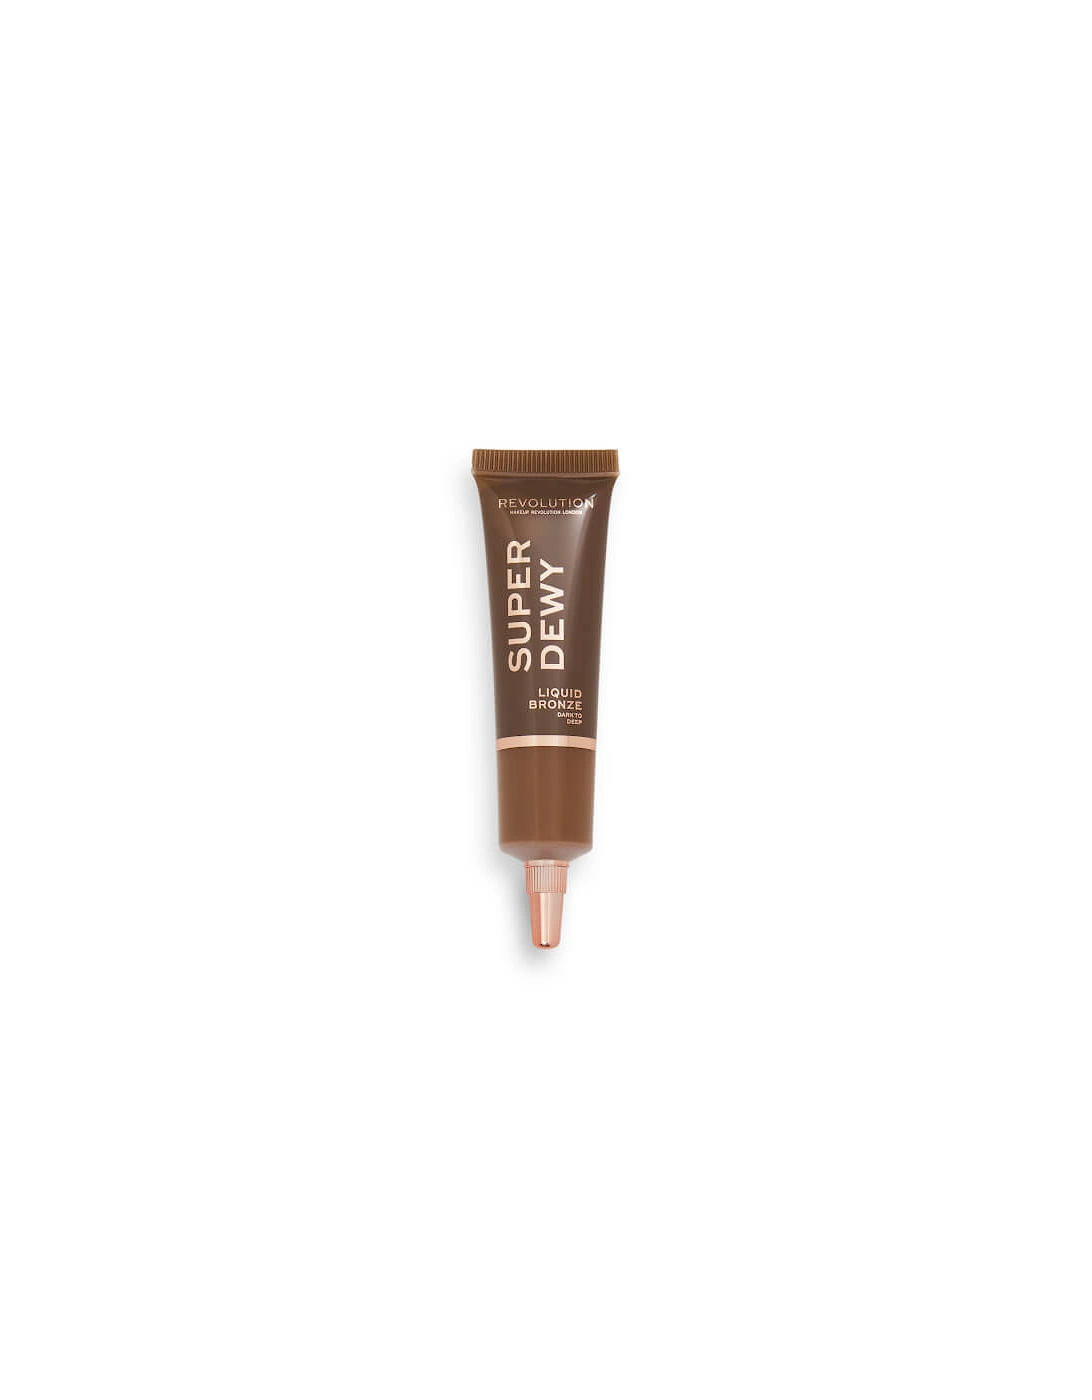 Makeup Superdewy Liquid Bronzer - Dark to Deep, 2 of 1